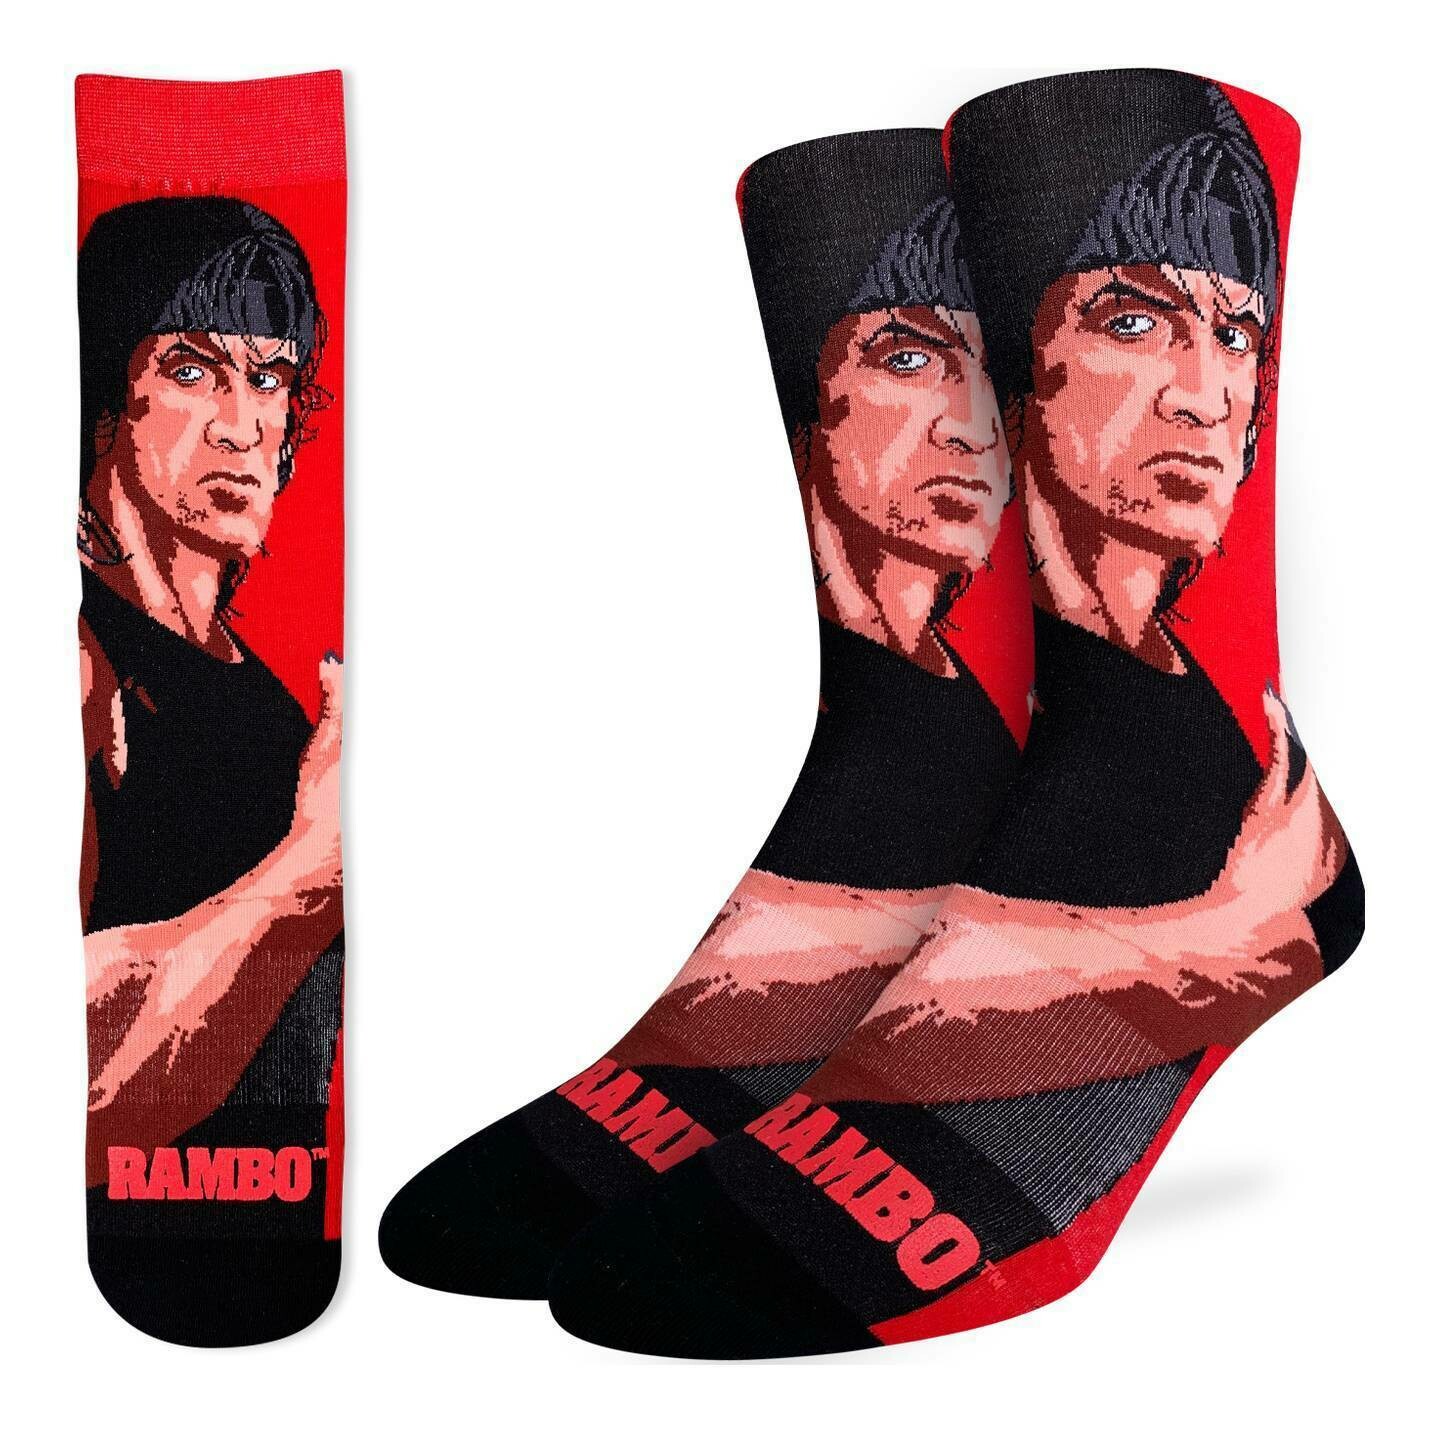 Rambo 200 needle socks